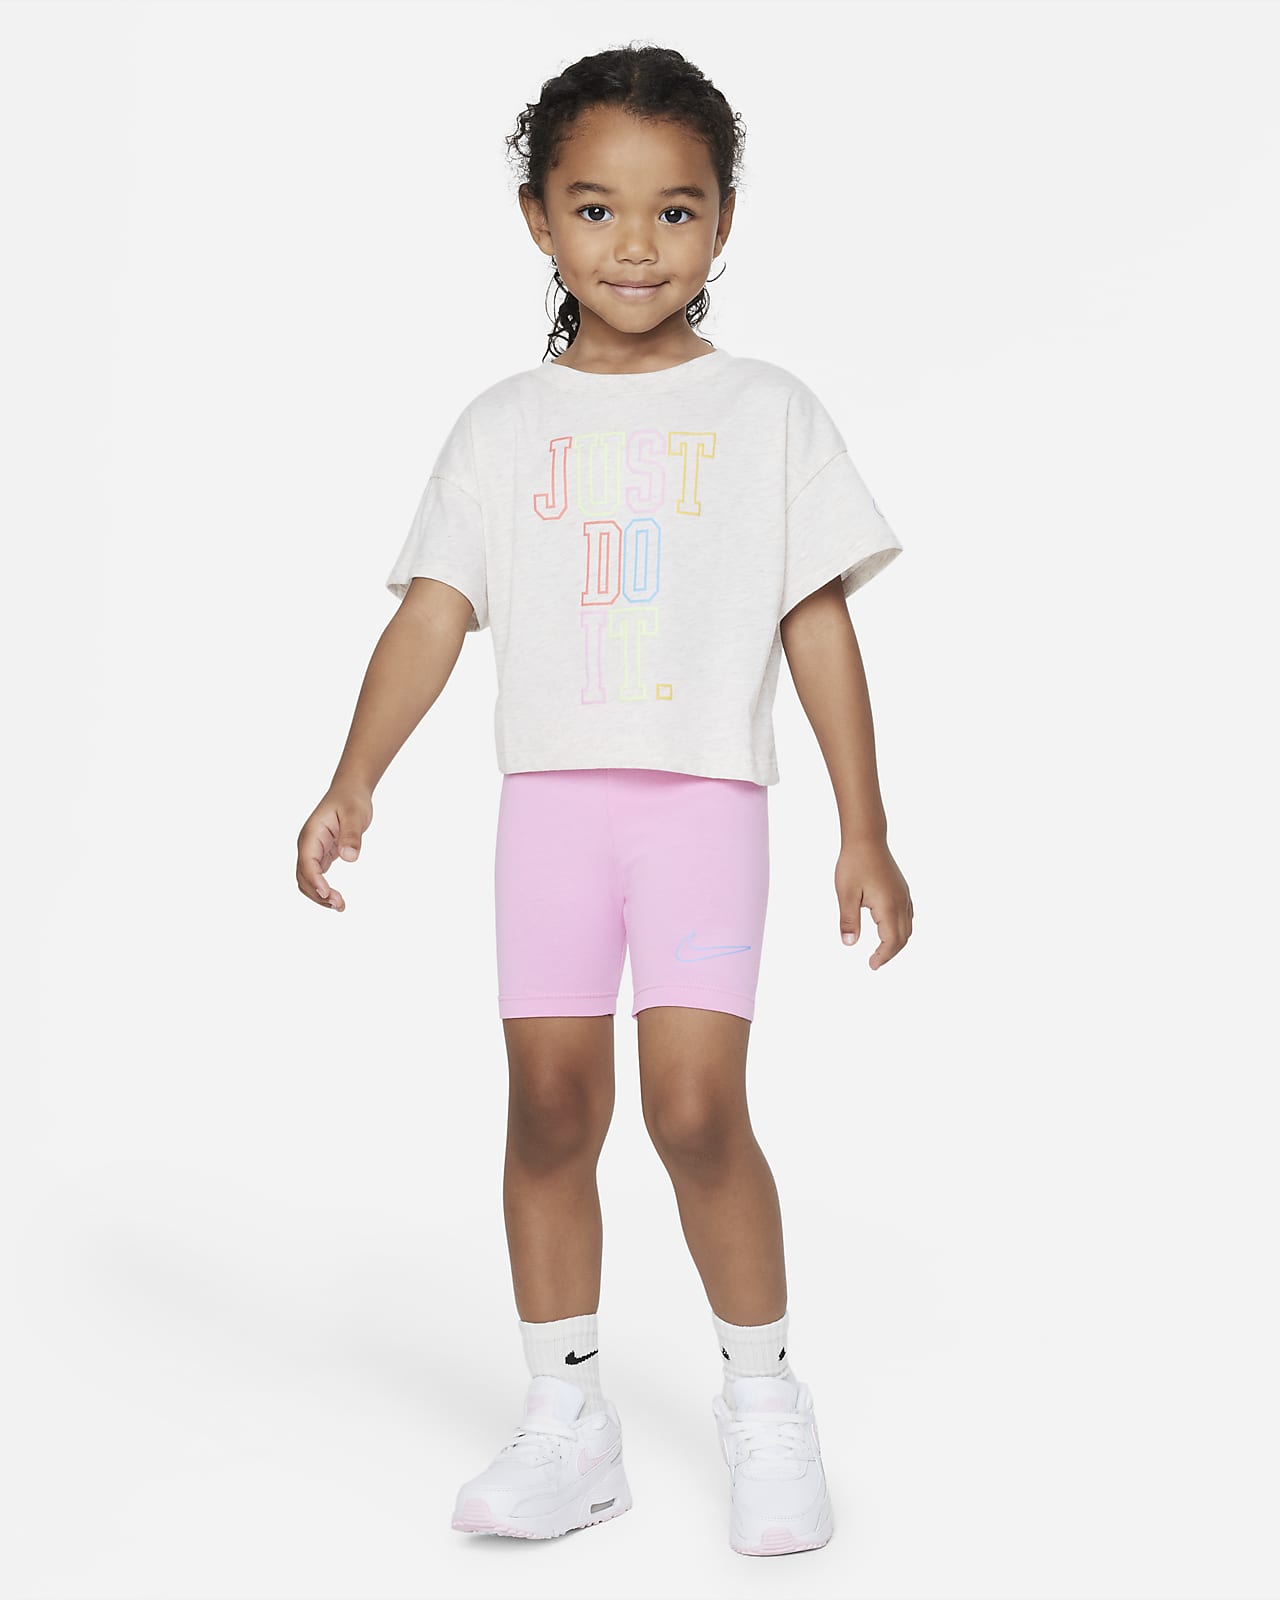 Nike de camiseta y pantalón corto - Niño/a pequeño/a. Nike ES